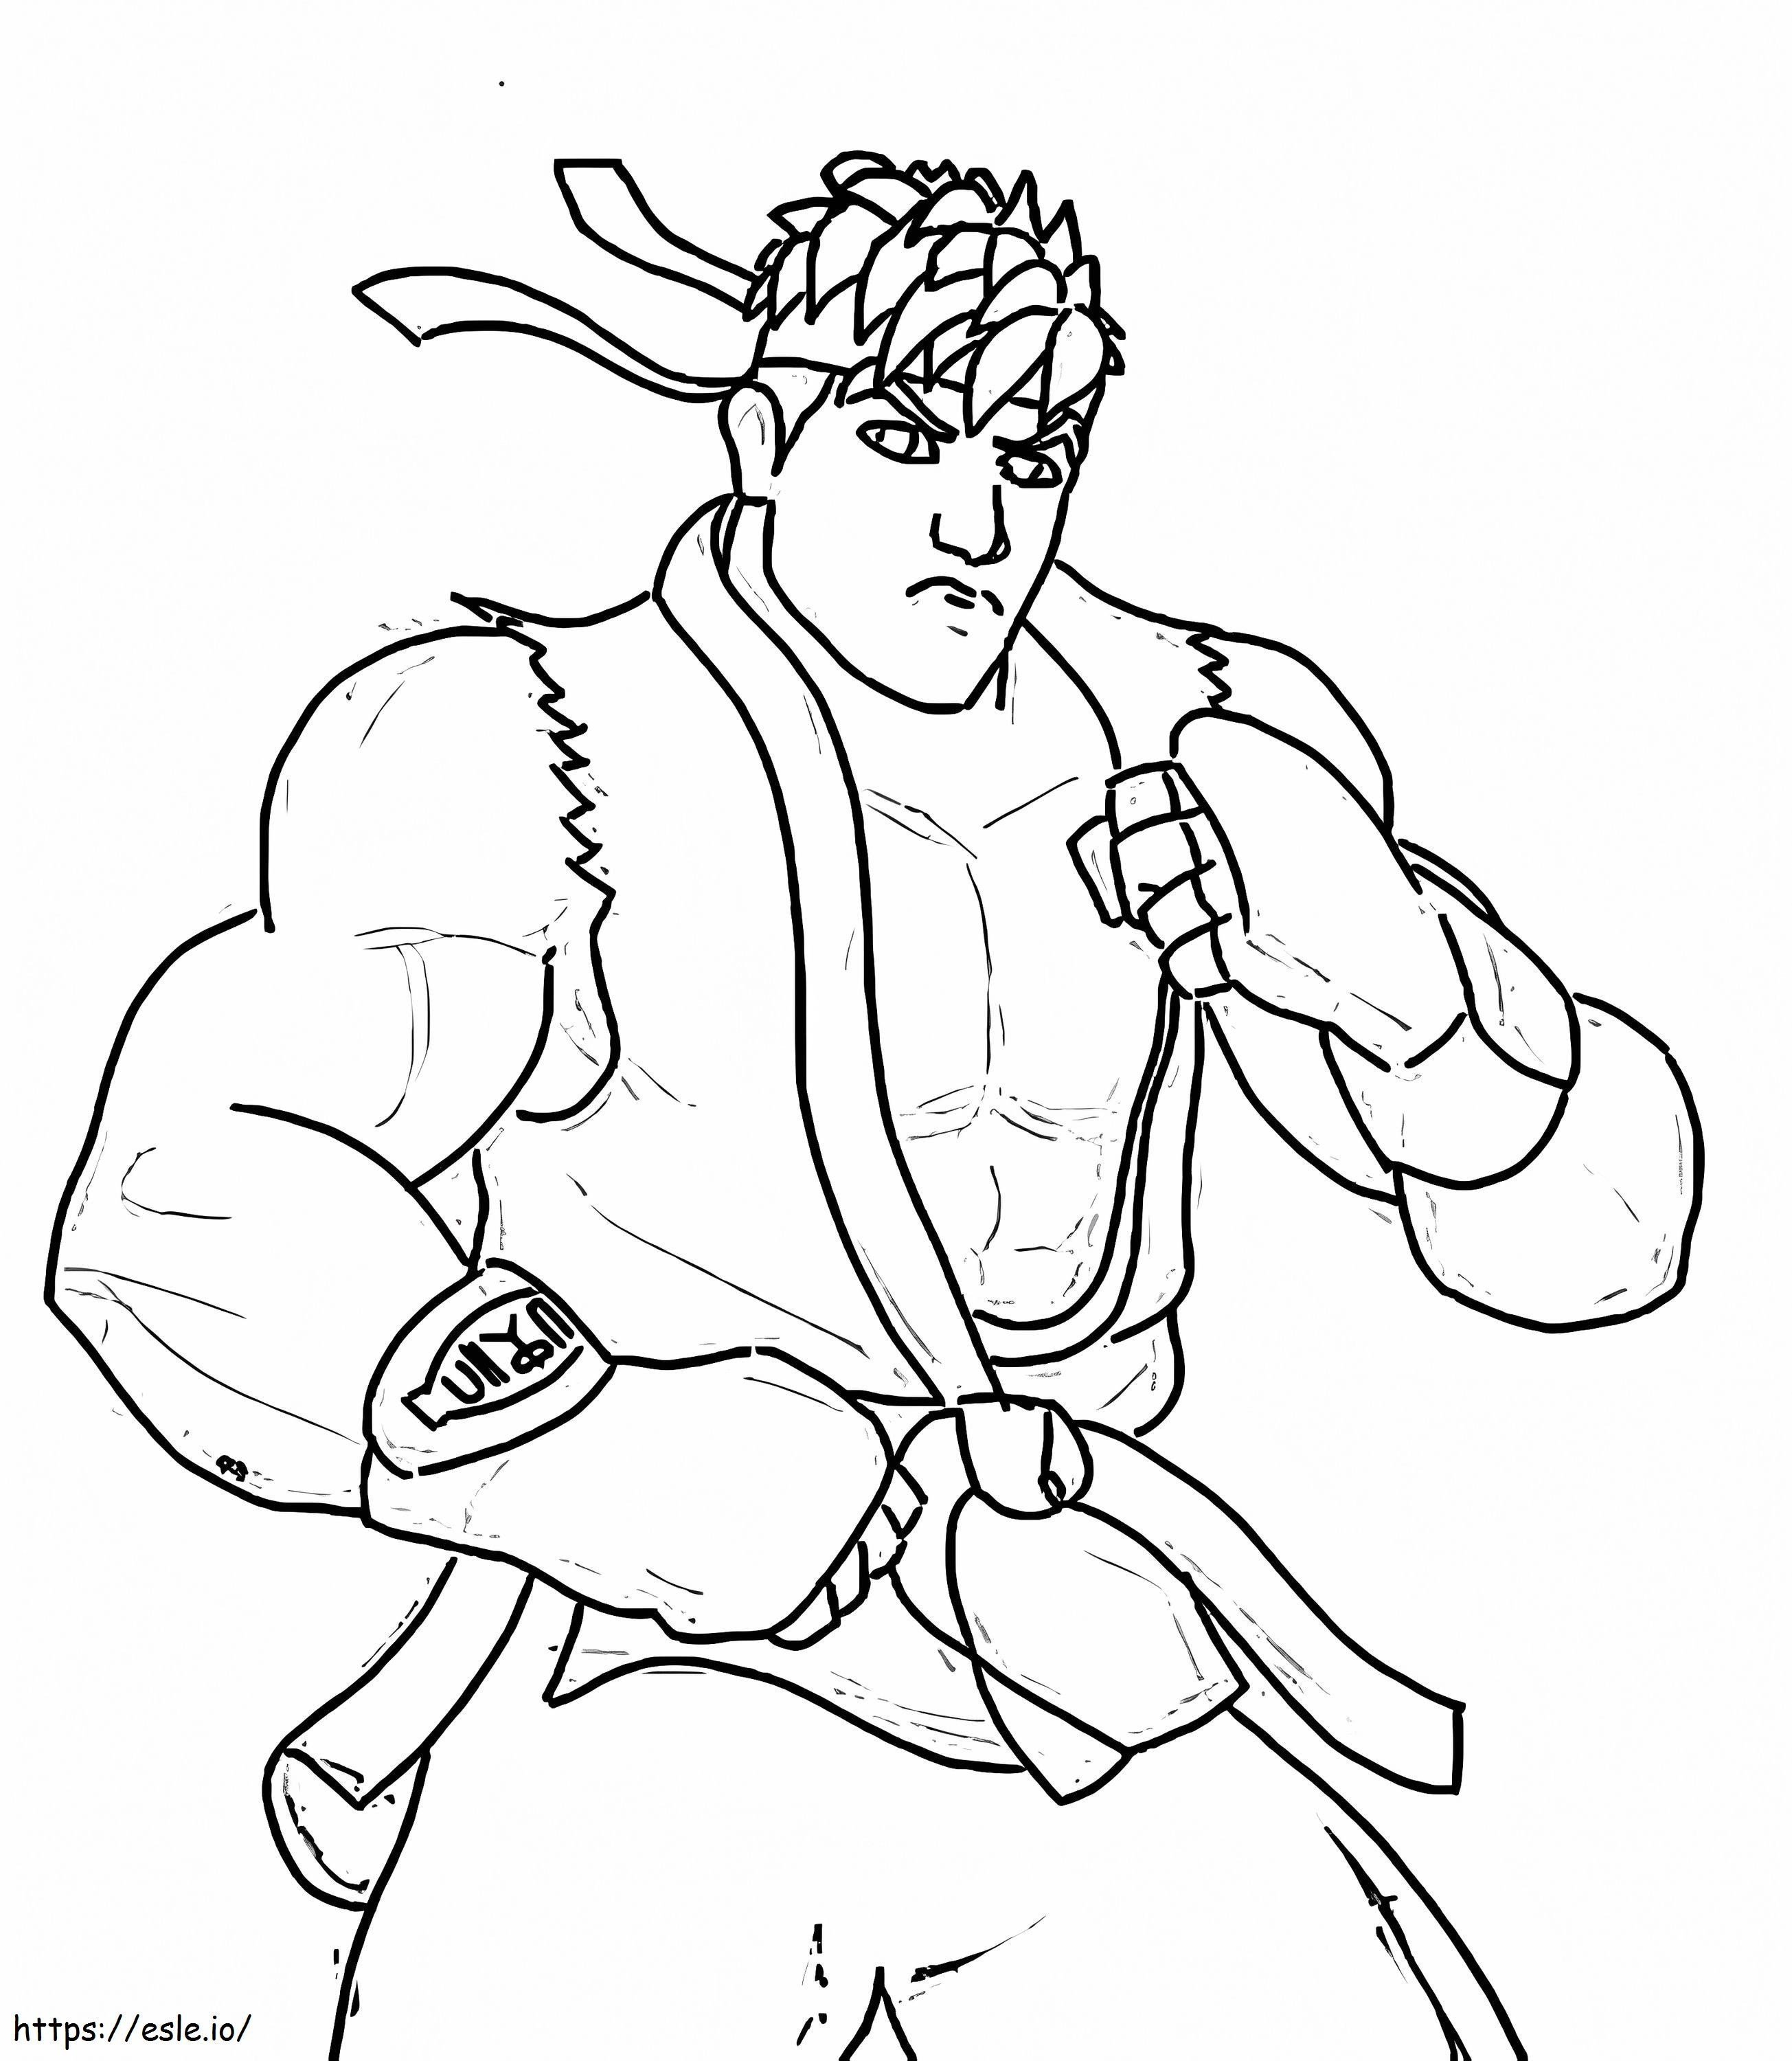 Ilmainen tulostettava Ryu värityskuva